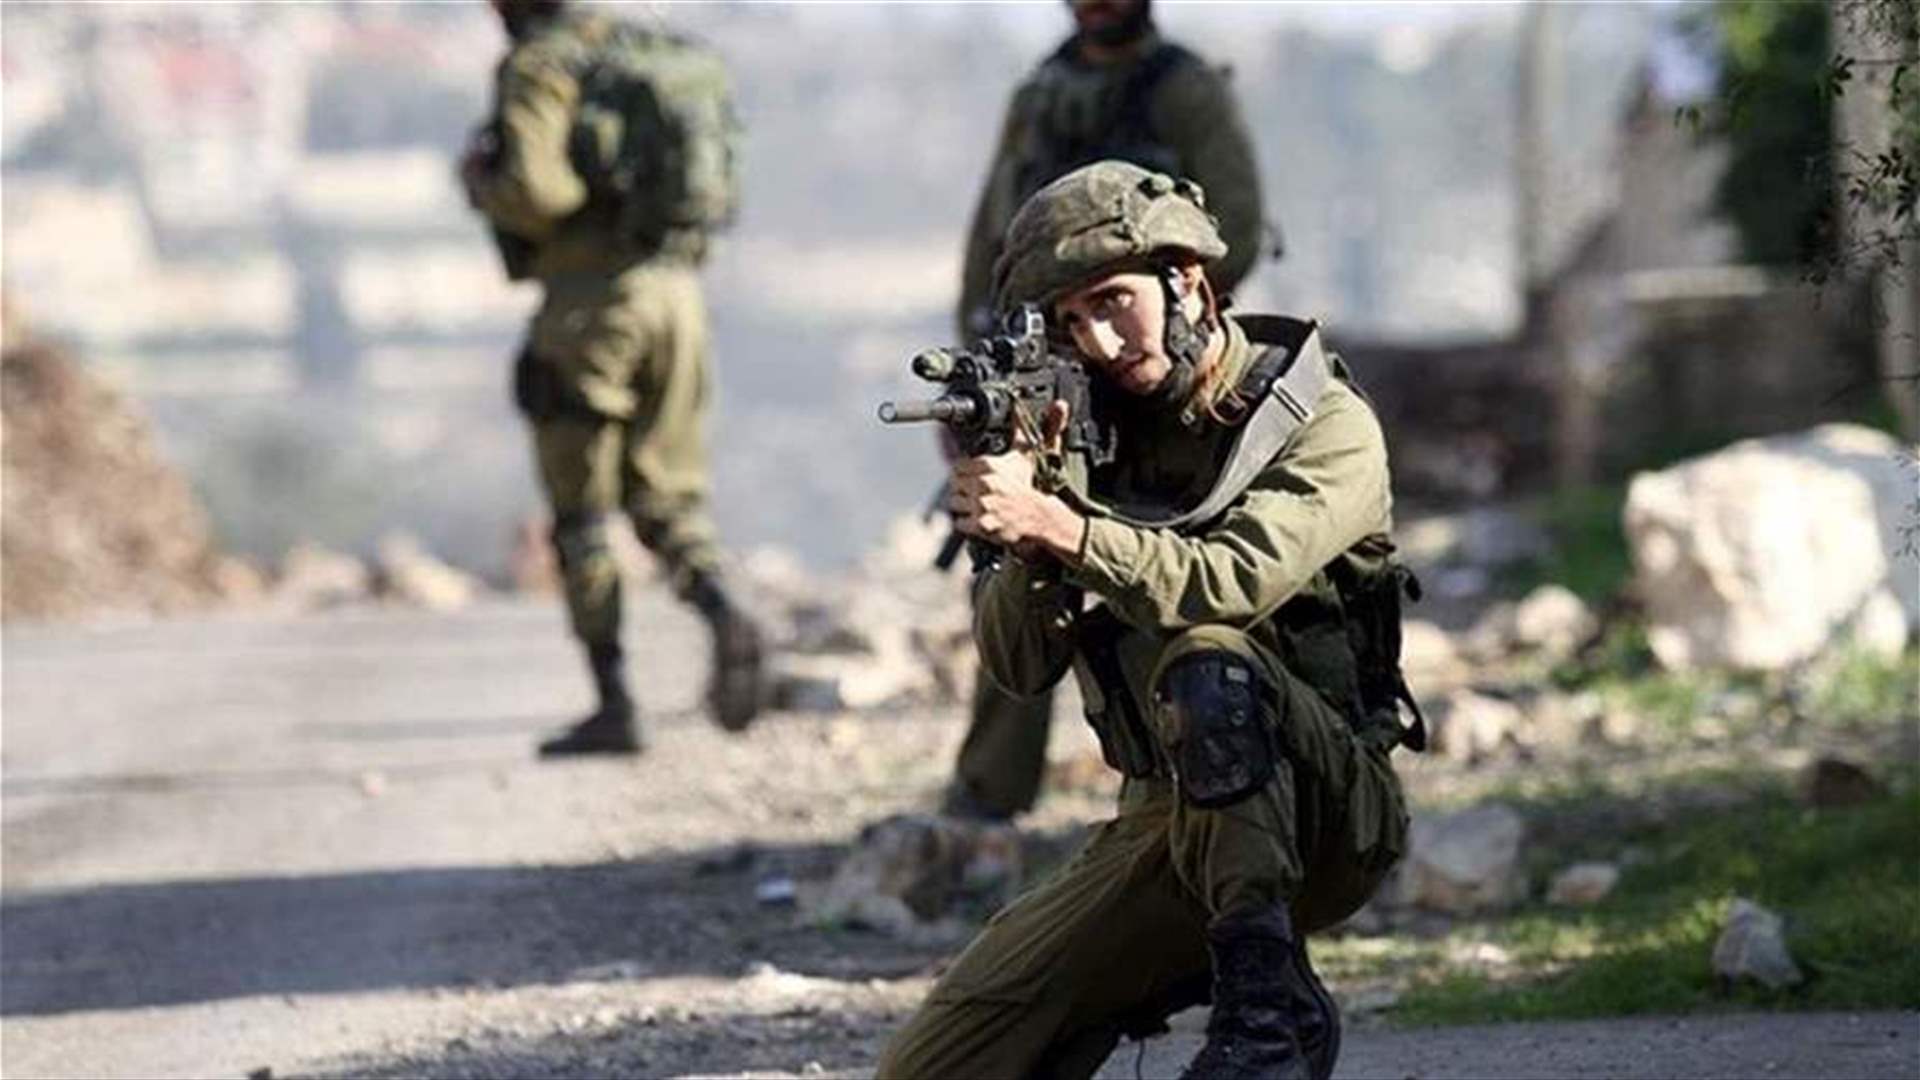 مقتل أربعة فلسطينيين برصاص الجيش الاسرائيلي في الضفة الغربية